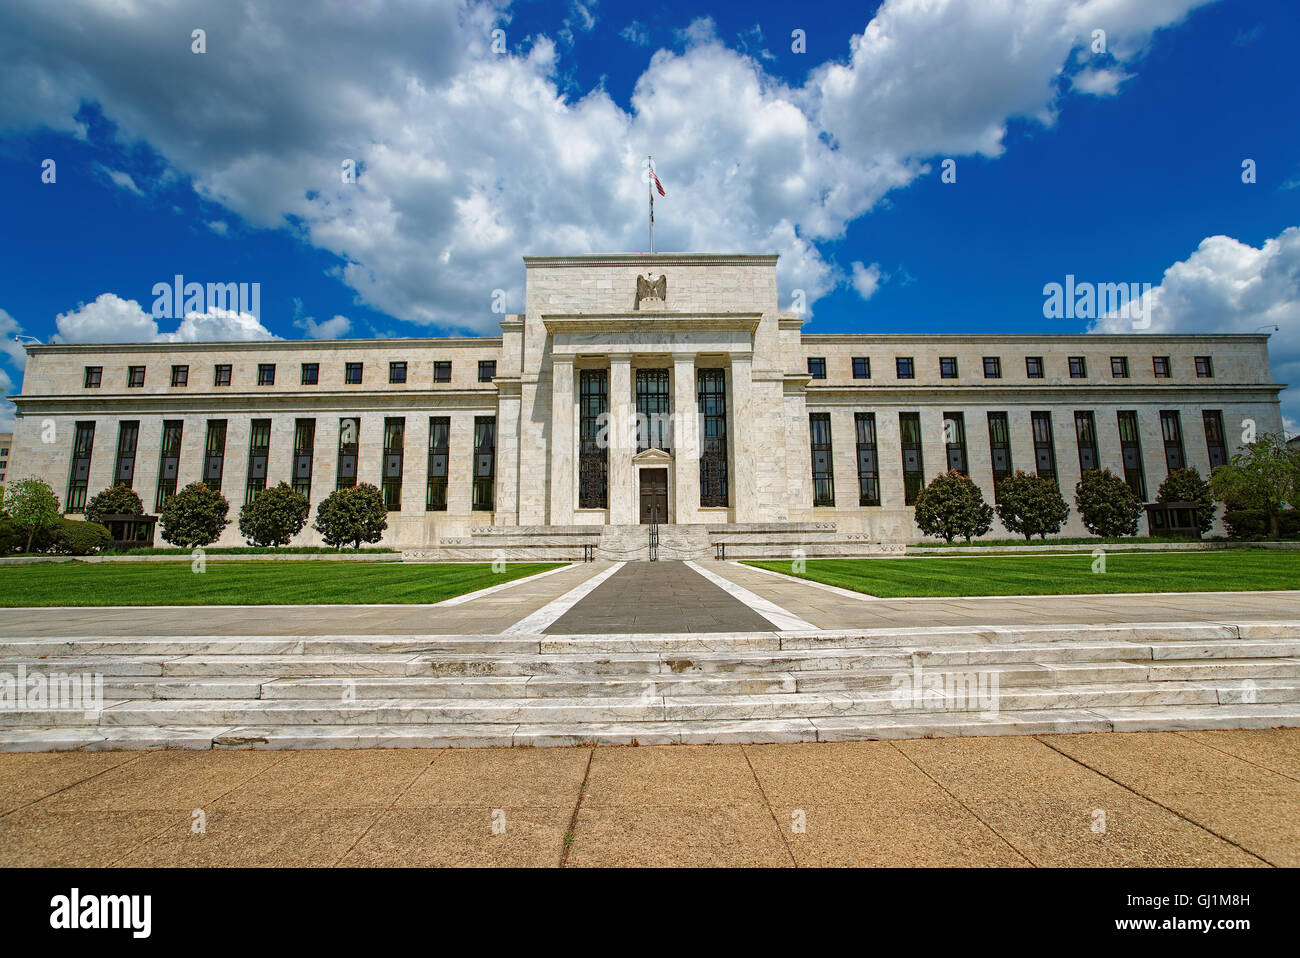 Marriner S. Eccles, Federal Reserve Board Building est situé à Washington D.C., USA. Il a été conçu par Paul Philippe Cret et construit en 1937. Il était auparavant appelé Bâtiment de la Réserve fédérale. Banque D'Images